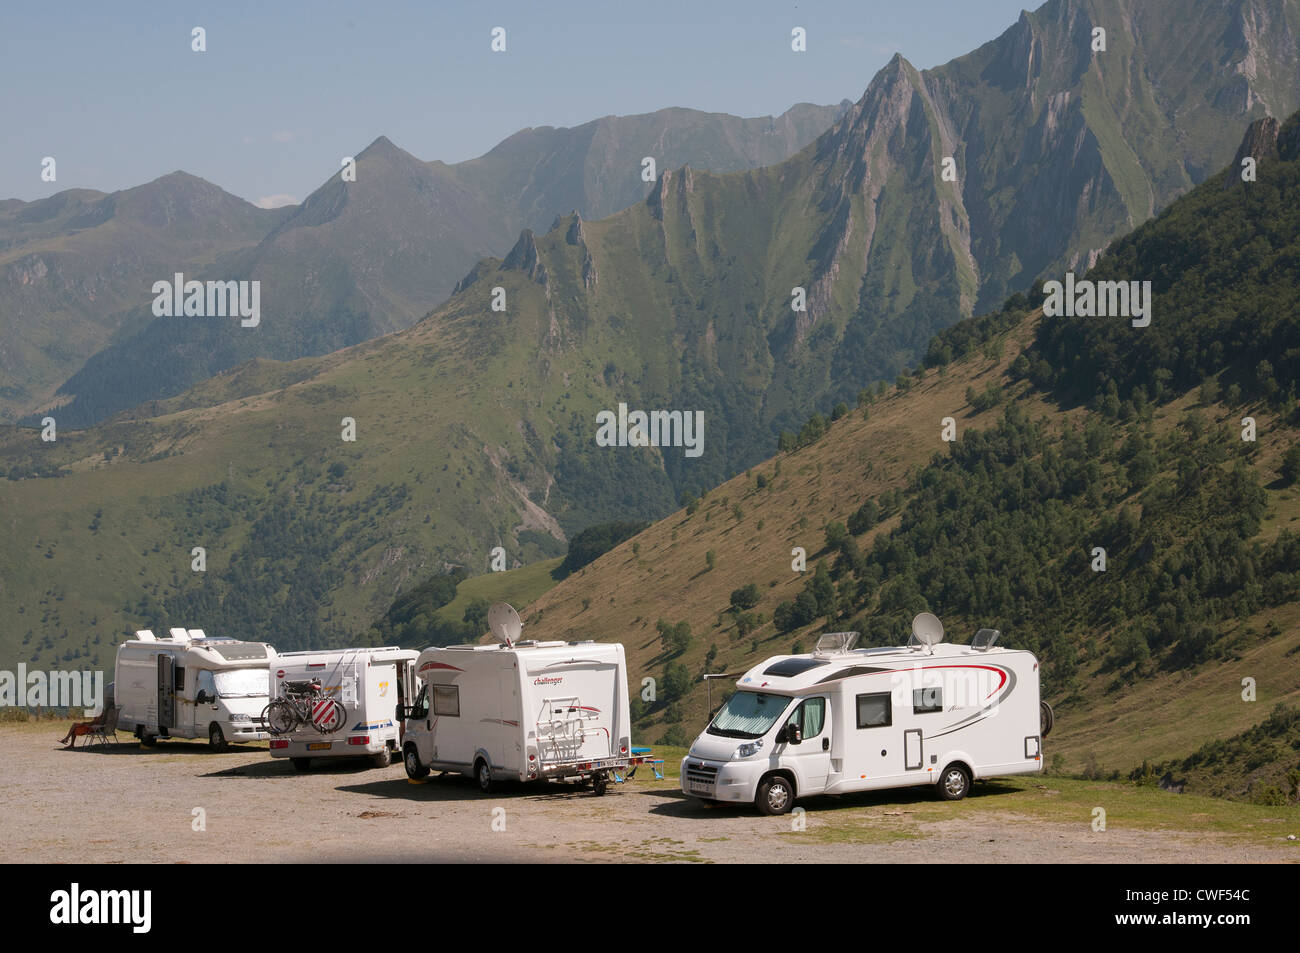 Nationalpark Pyrenäen Südwest-Frankreich touring Wohnmobile mit einer malerischen Bergkulisse Stockfoto